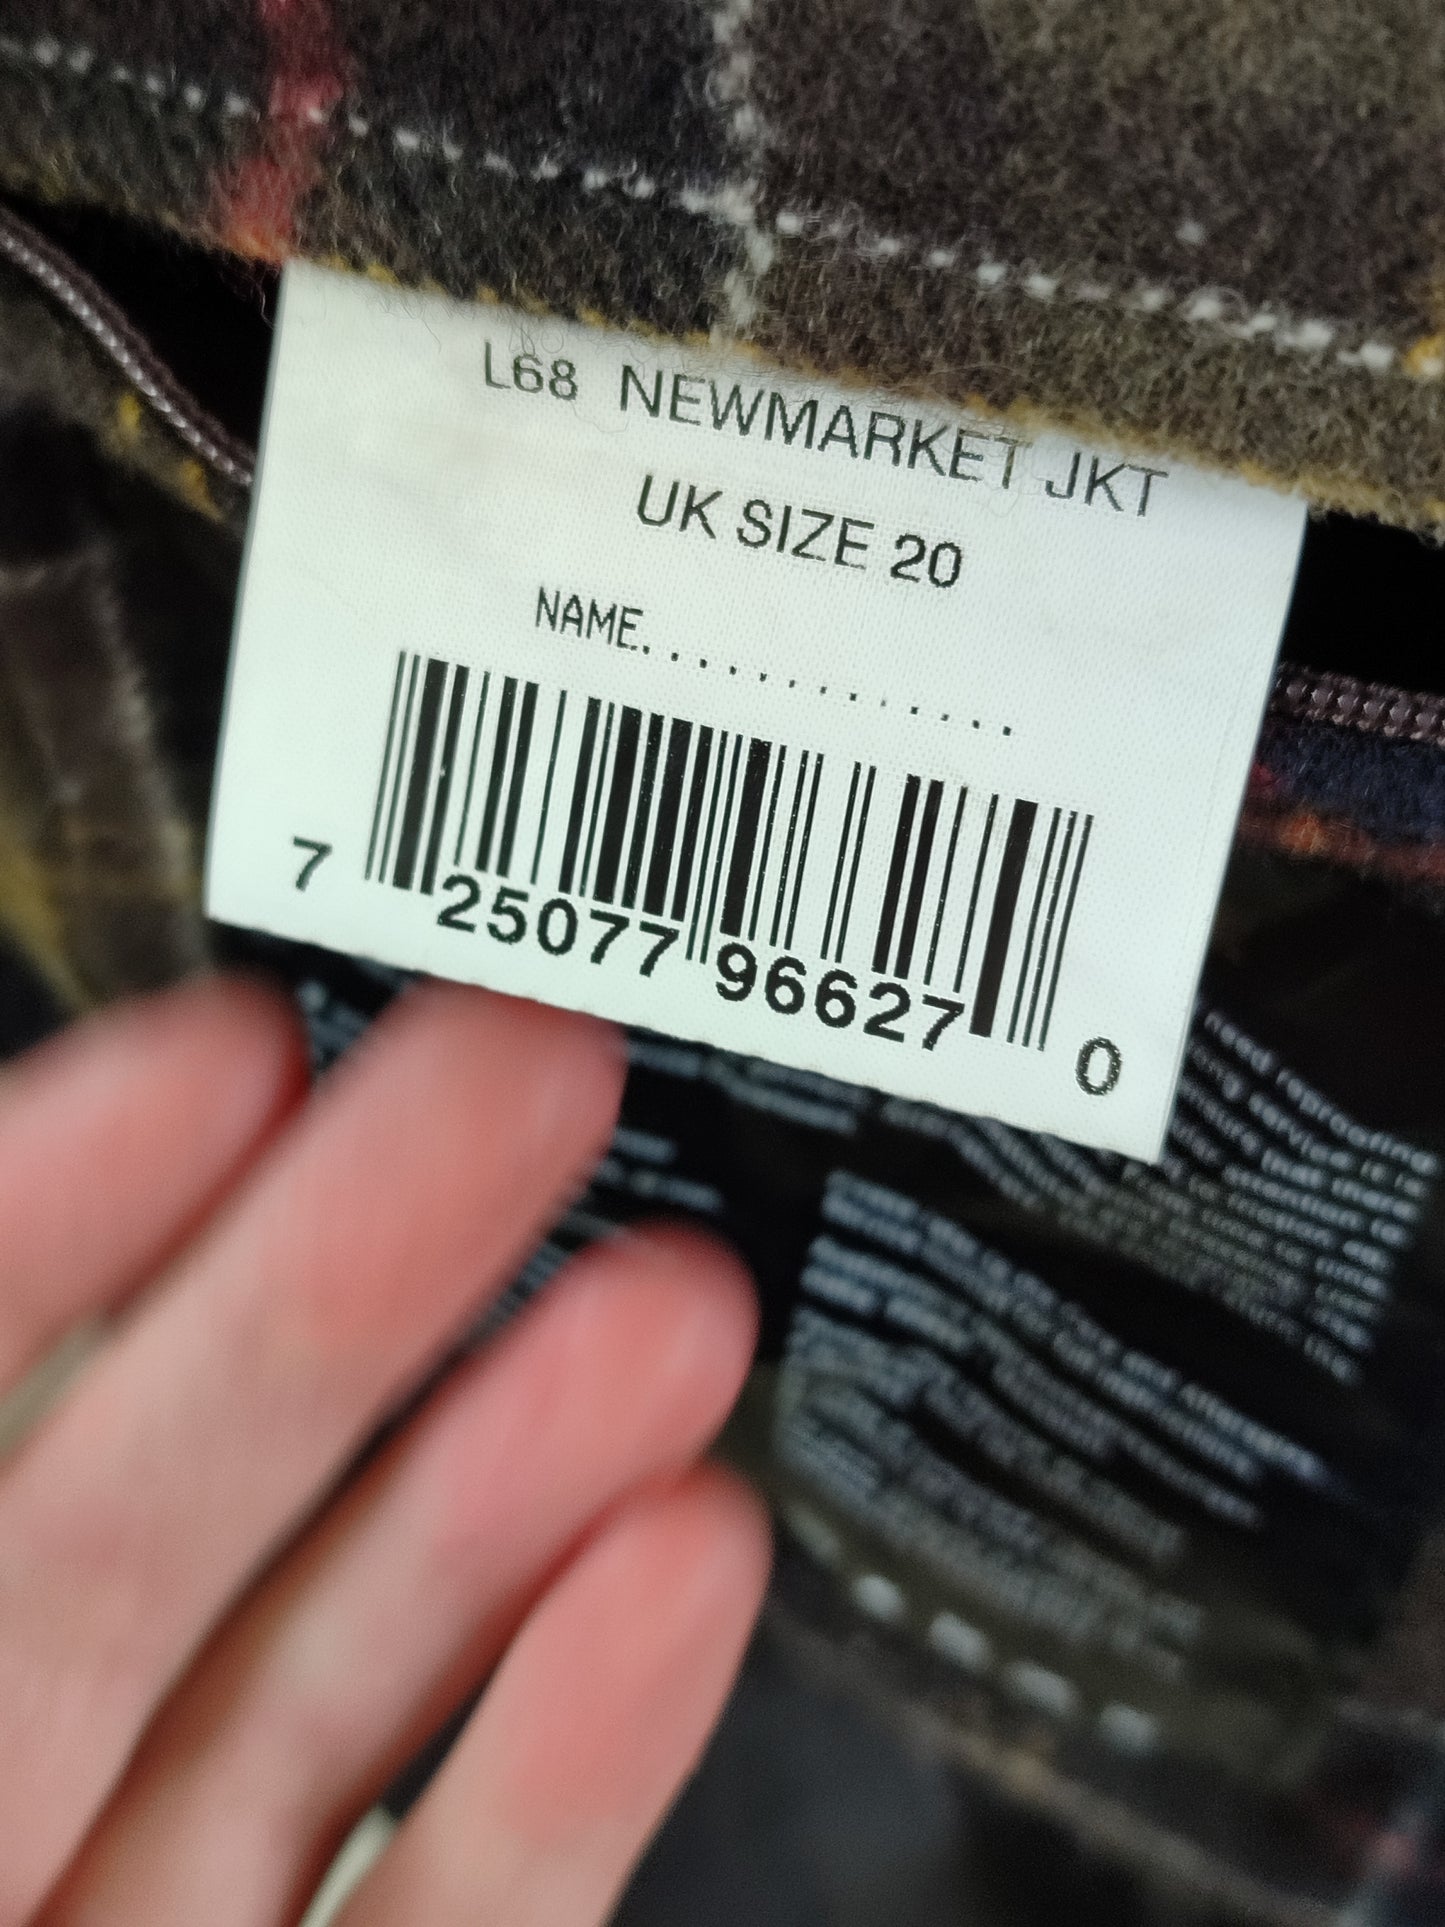 Giacca Barbour Unisex Nera Newmarket cerato UNISEX Tg.48/50 Black Wax Coat size UK20